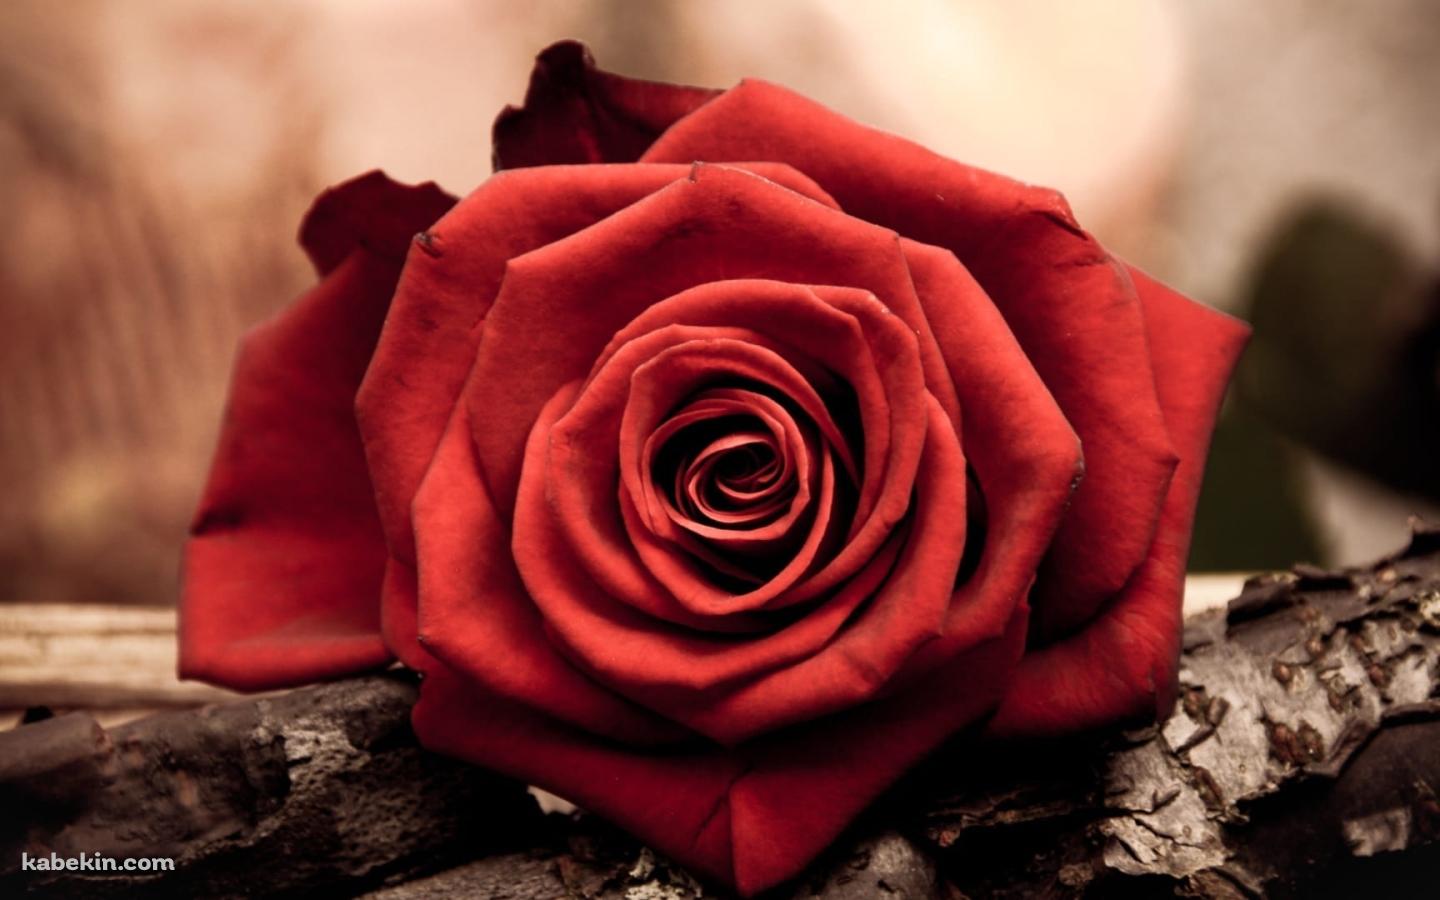 赤い薔薇と木の壁紙(1440px x 900px) 高画質 PC・デスクトップ用